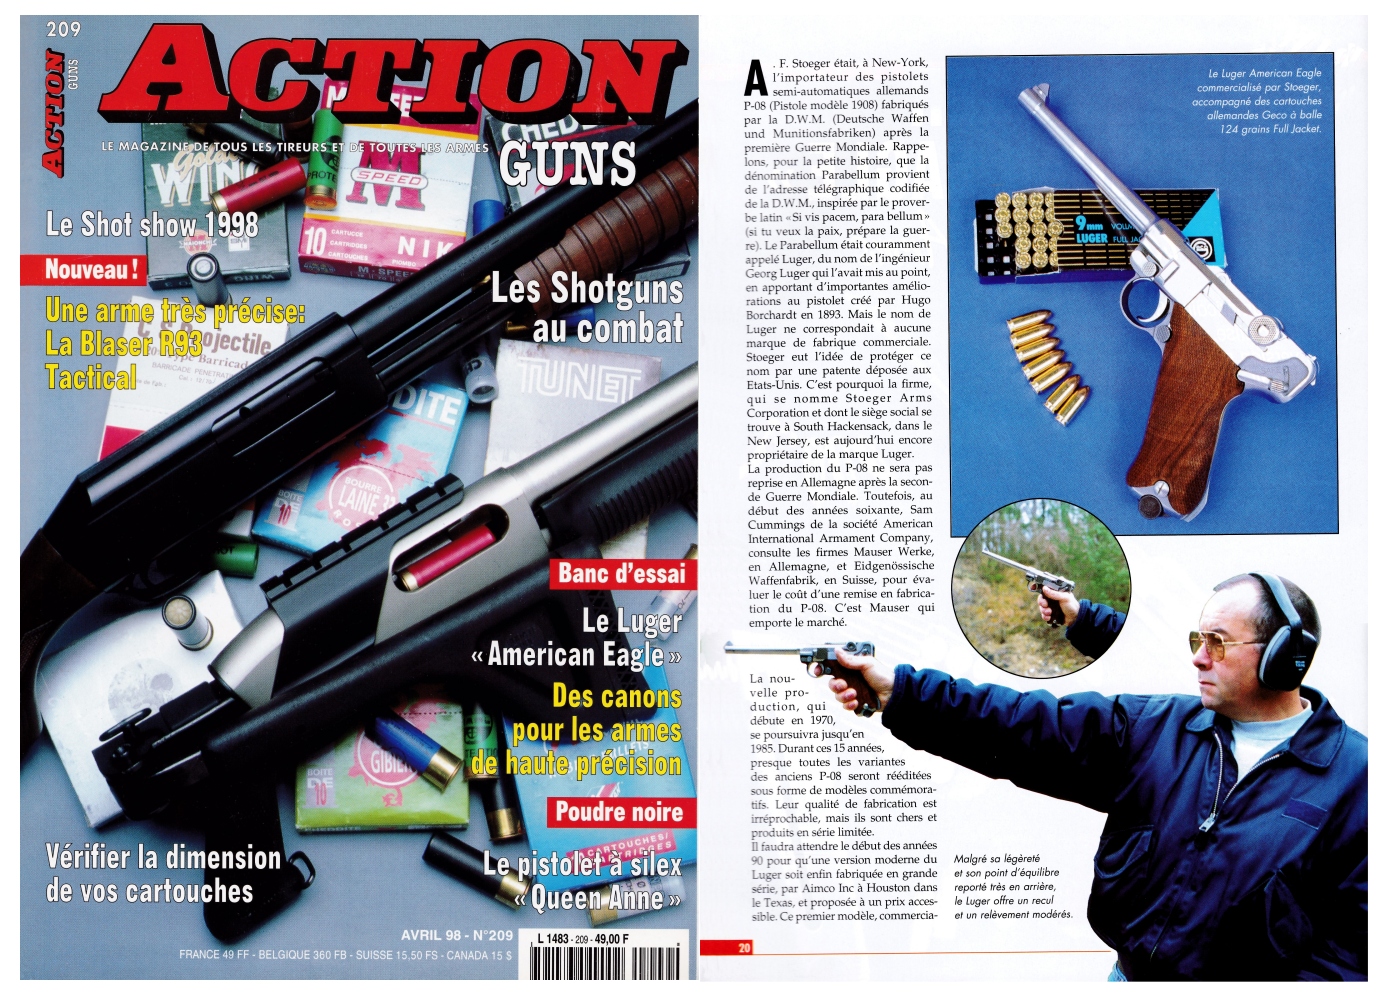 Le banc d’essai du pistolet Stoeger Luger American Eagle a été publié sur 7 pages dans le magazine Action Guns n°209 (avril 1998).